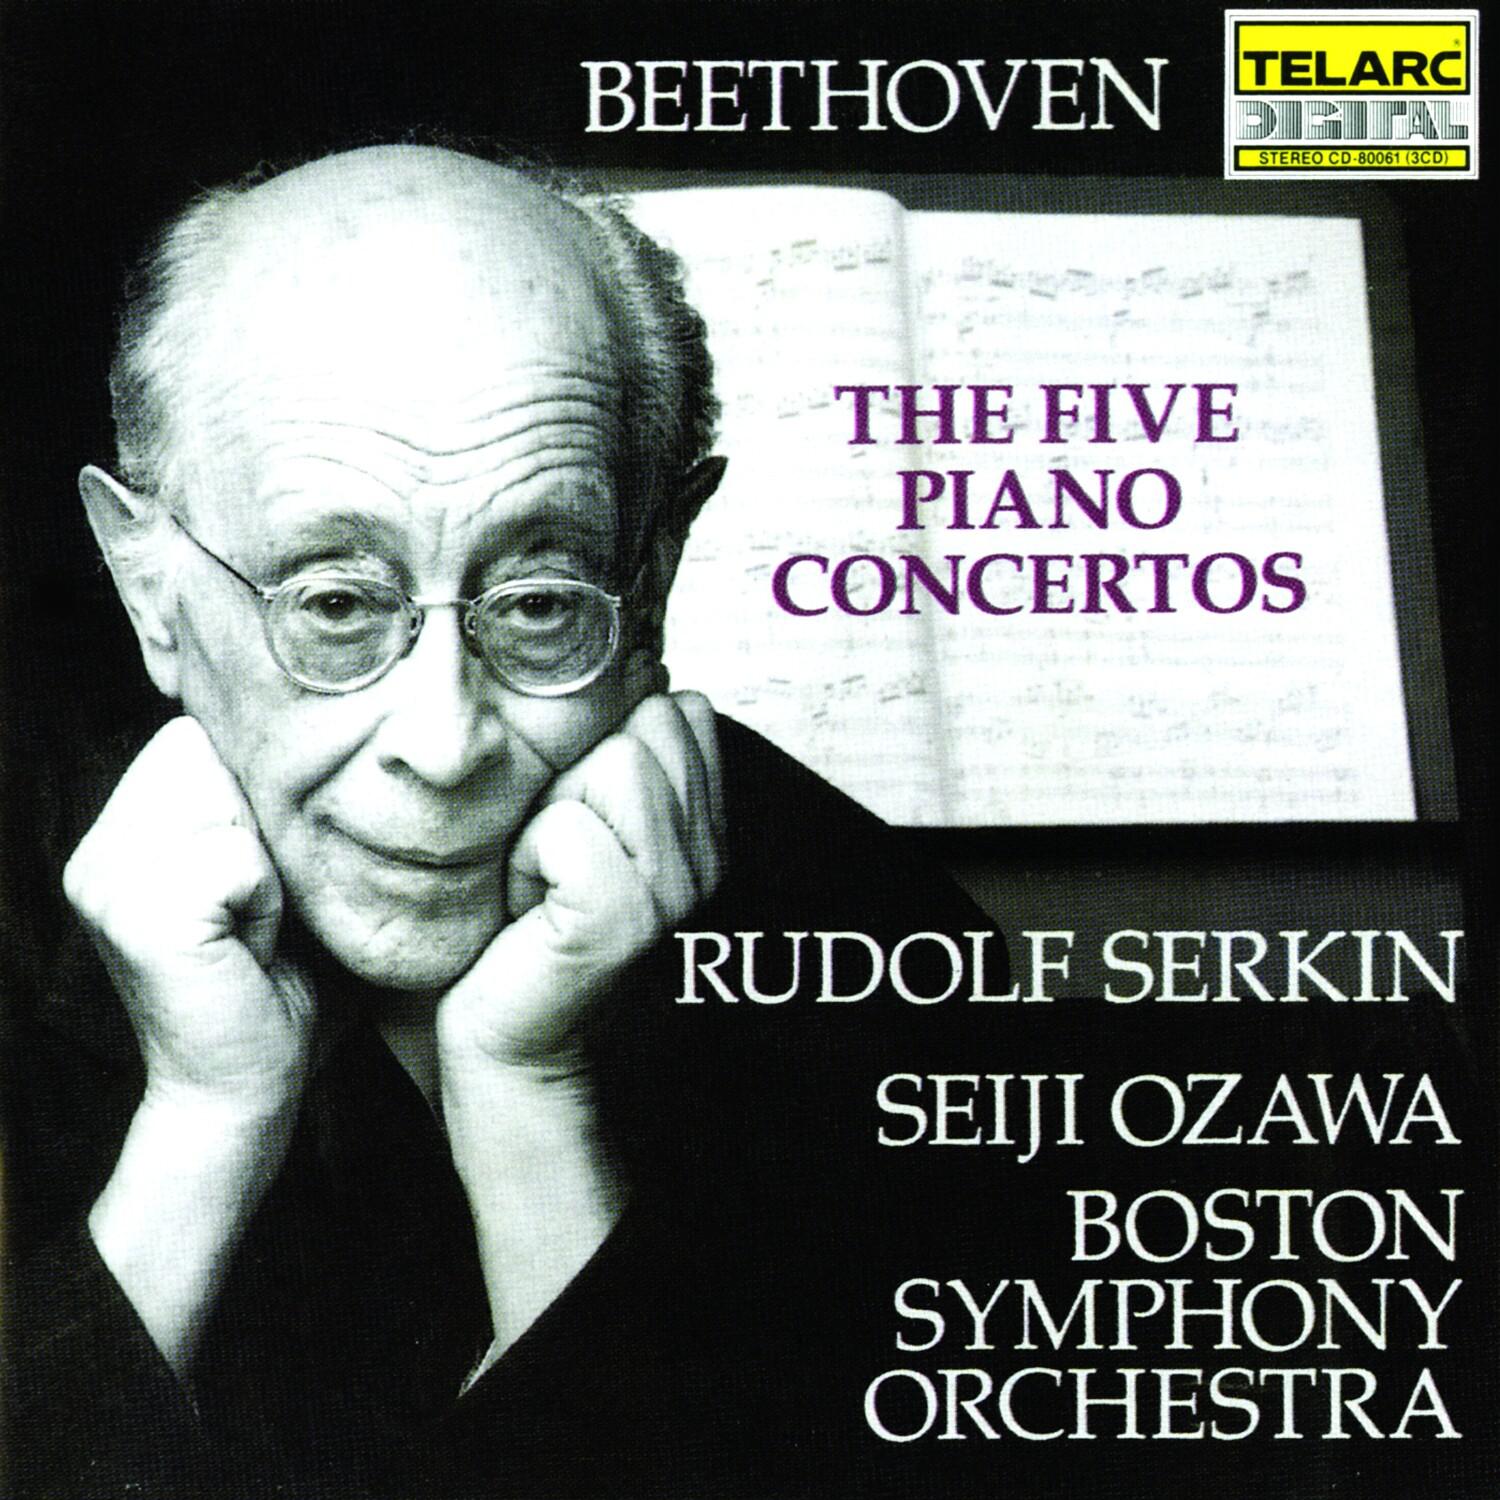 Concerto No. 2 in B-flat, Op. 19: I. Allegro con brio